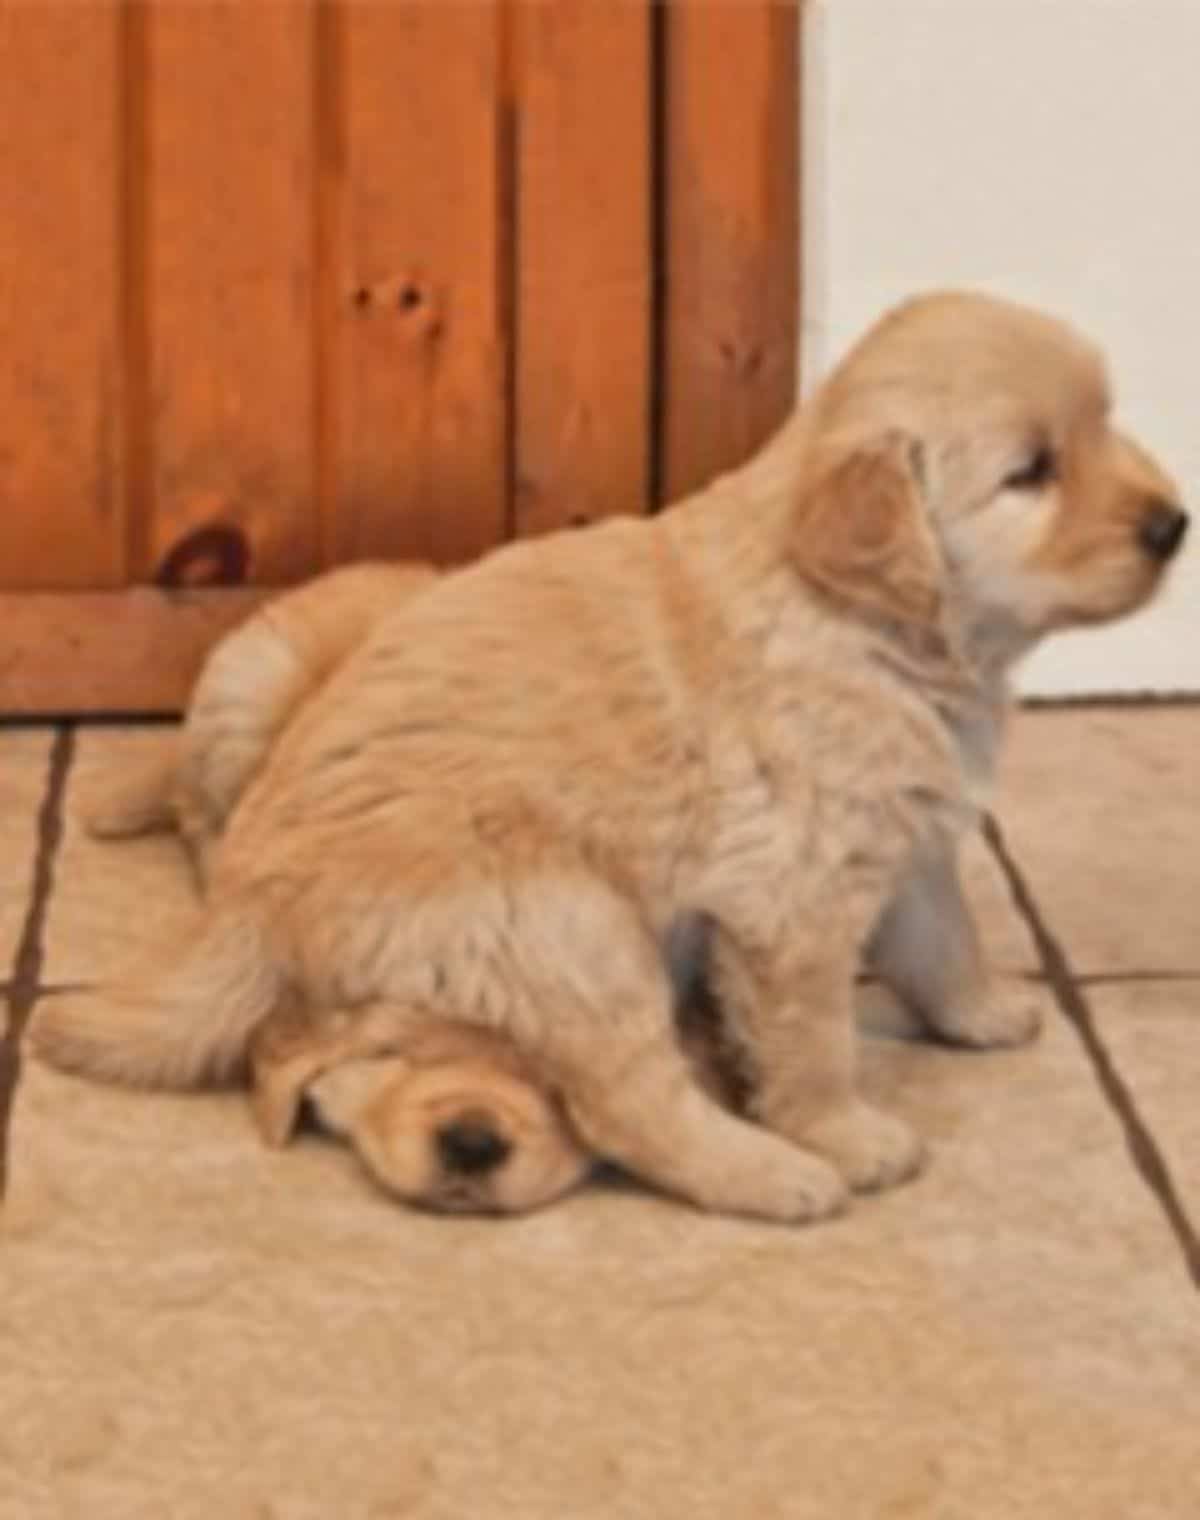 golden retriever puppy sitting on a golden retriever puppy's face